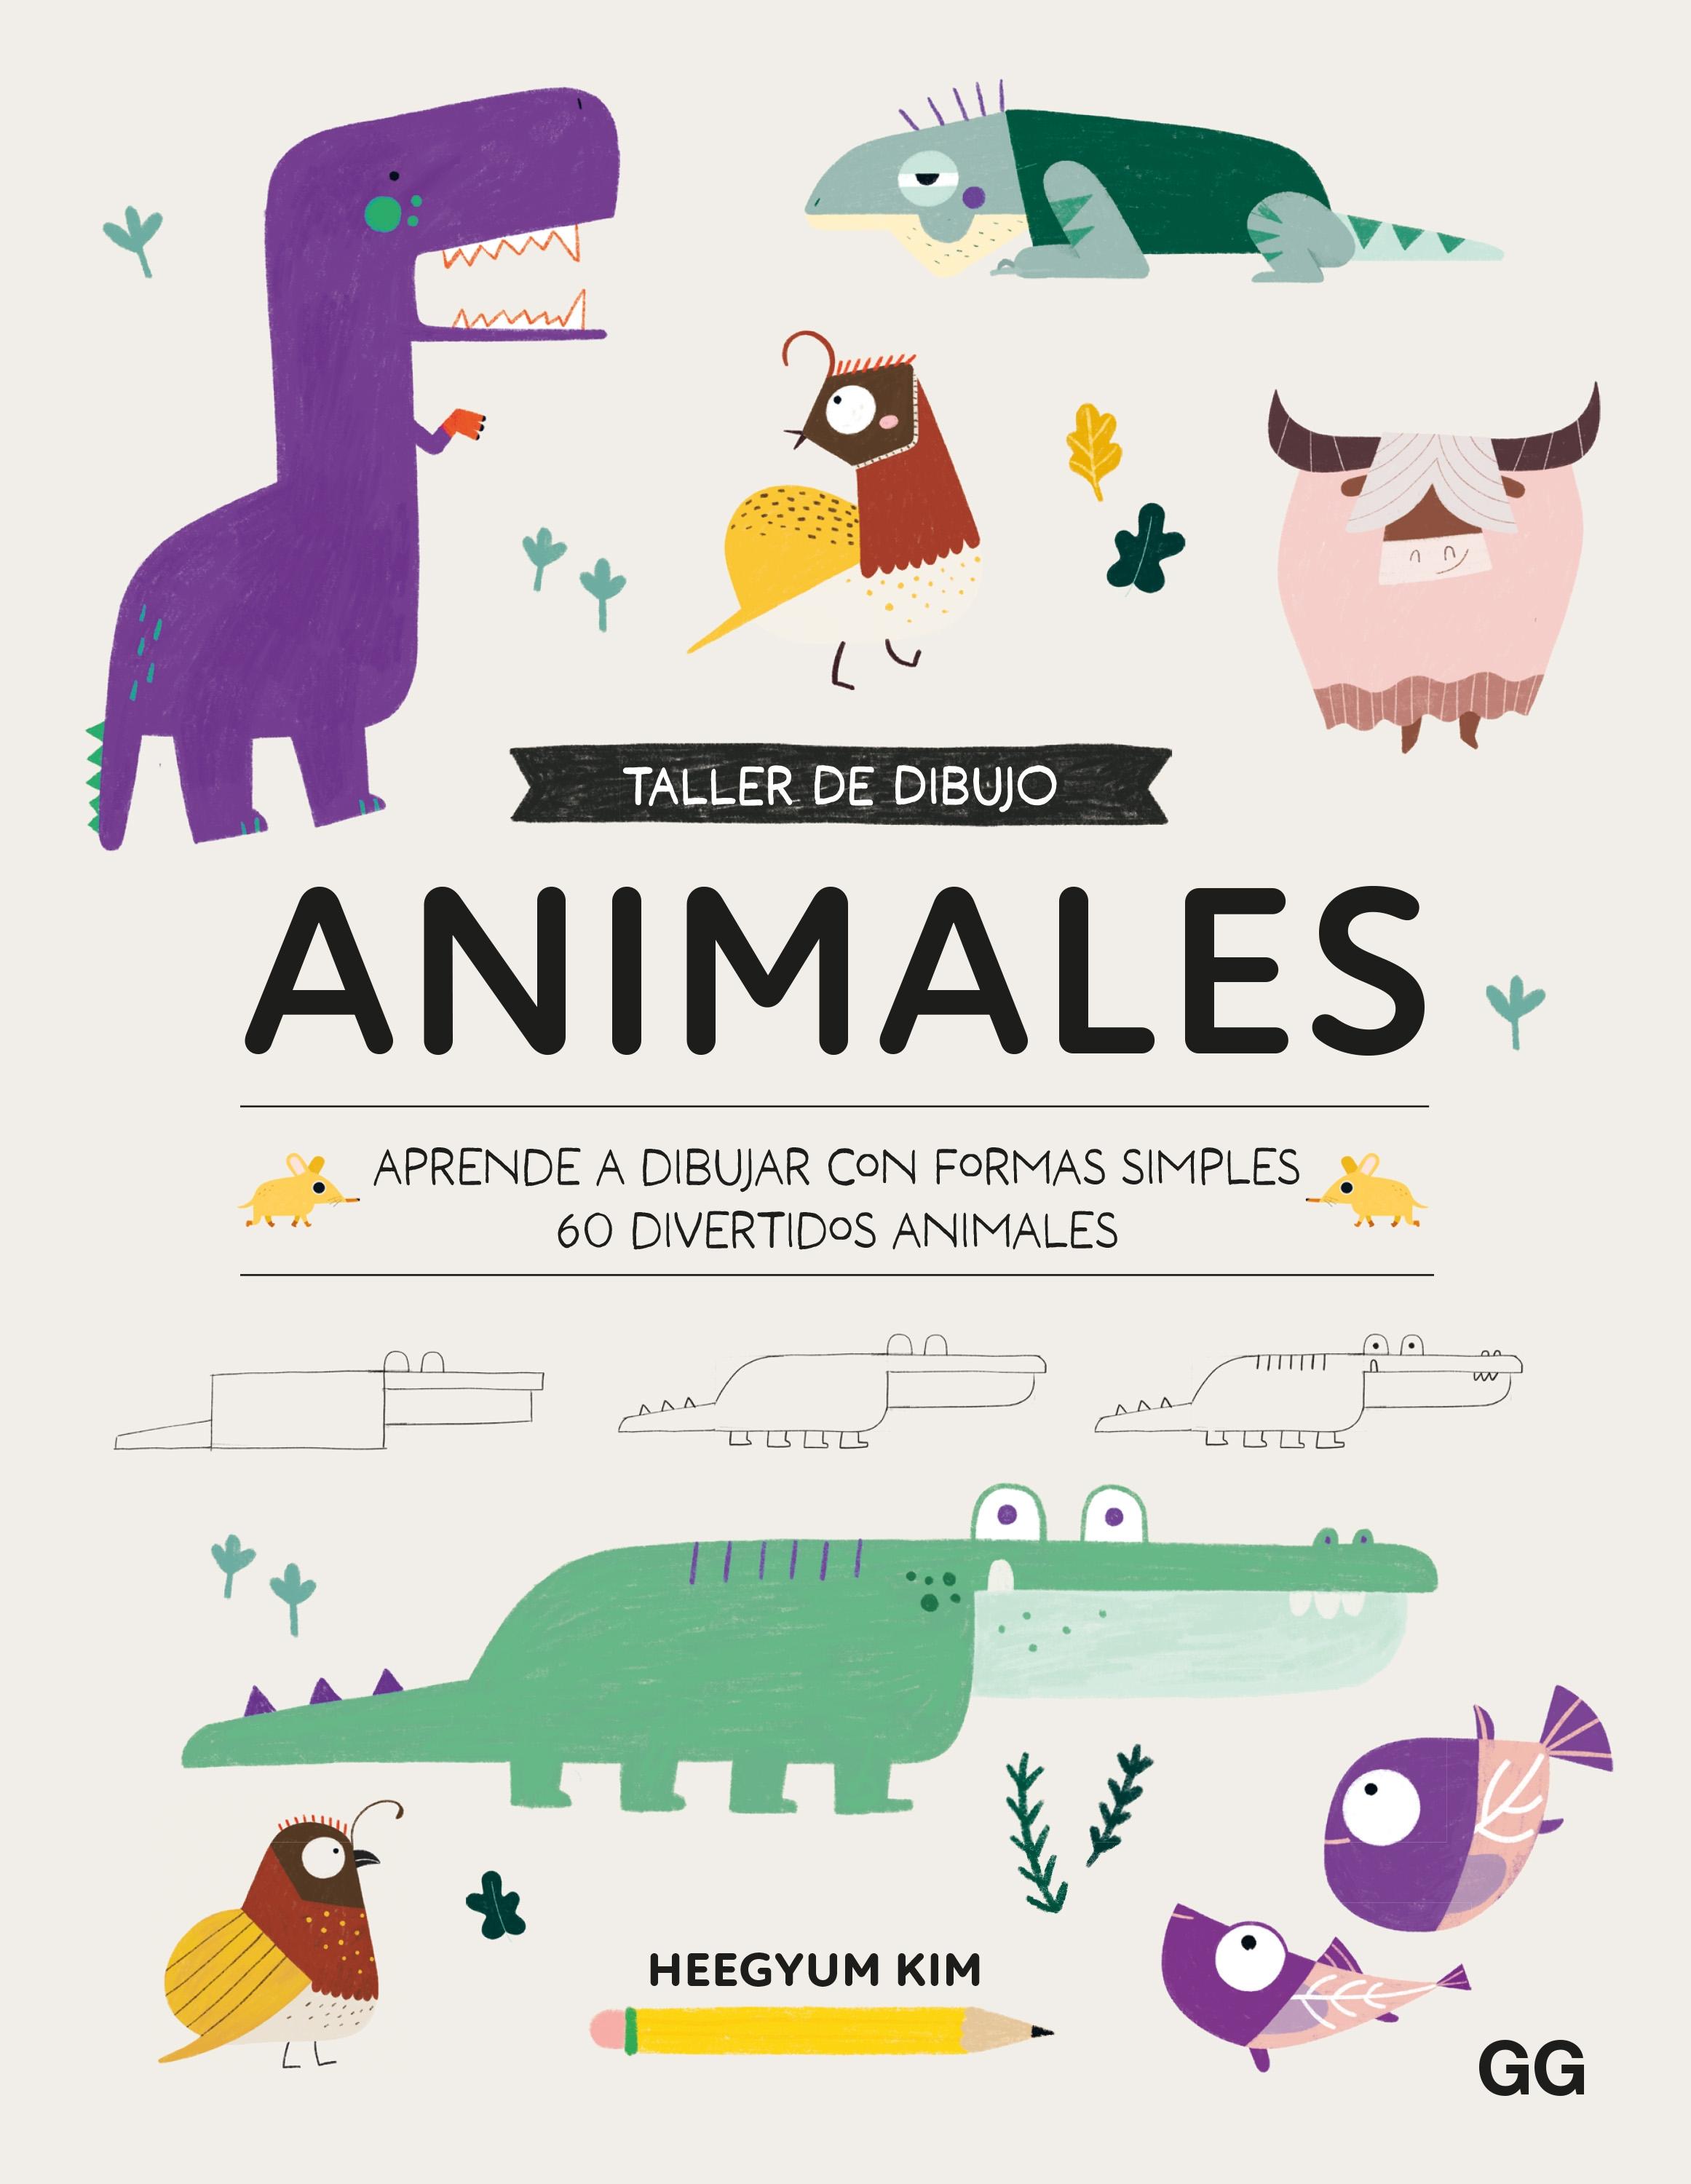 Taller de dibujo. Animales "Aprende a dibujar con formas simples 60 divertidos animales"